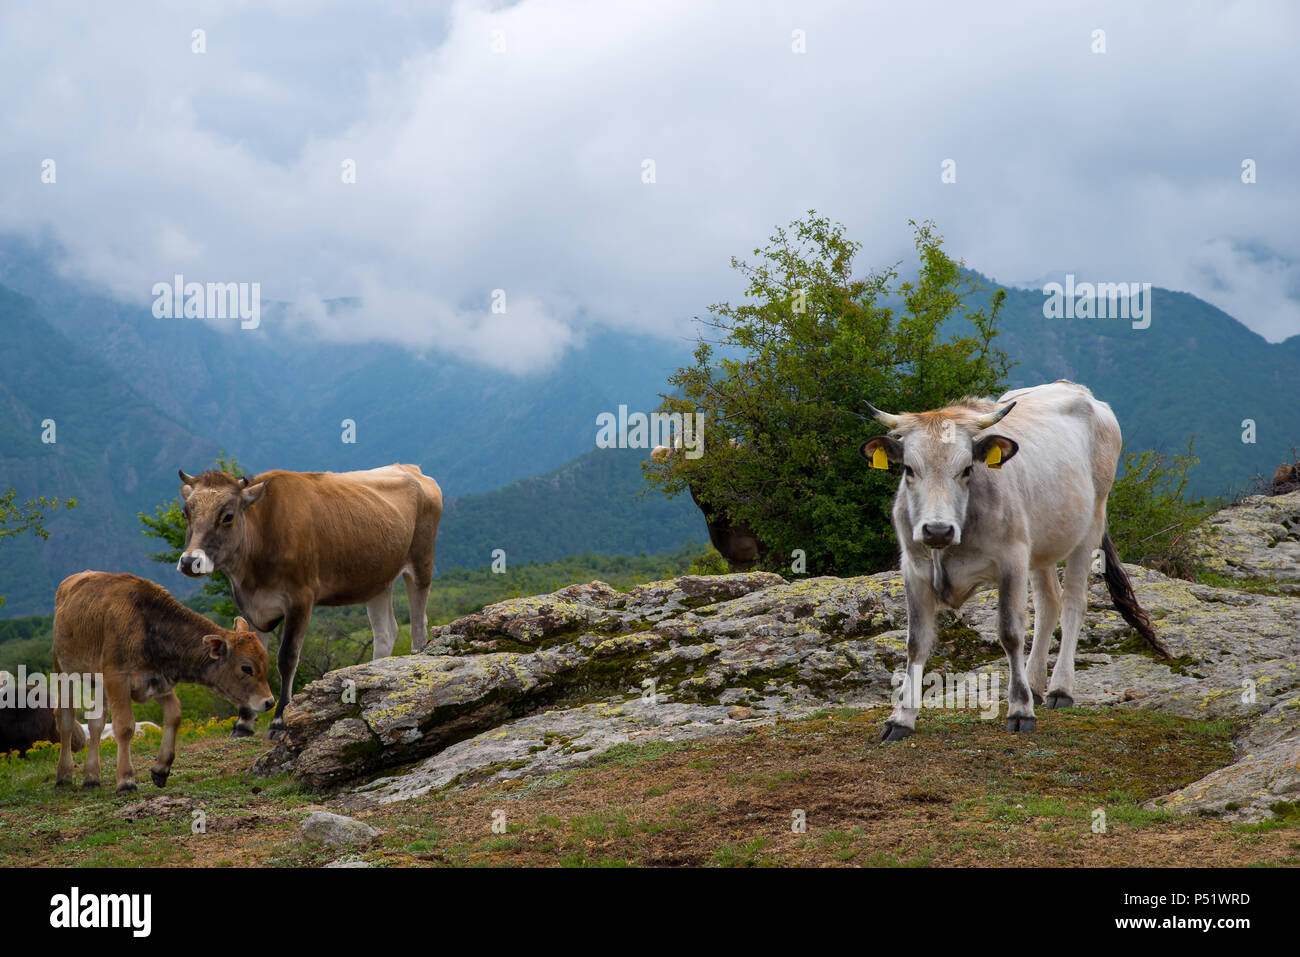 Mountain allevamento. Vacche e vitelli. I bovini vengono sollevati come bestiame per la carne e per il latte e per pelli. Foto Stock